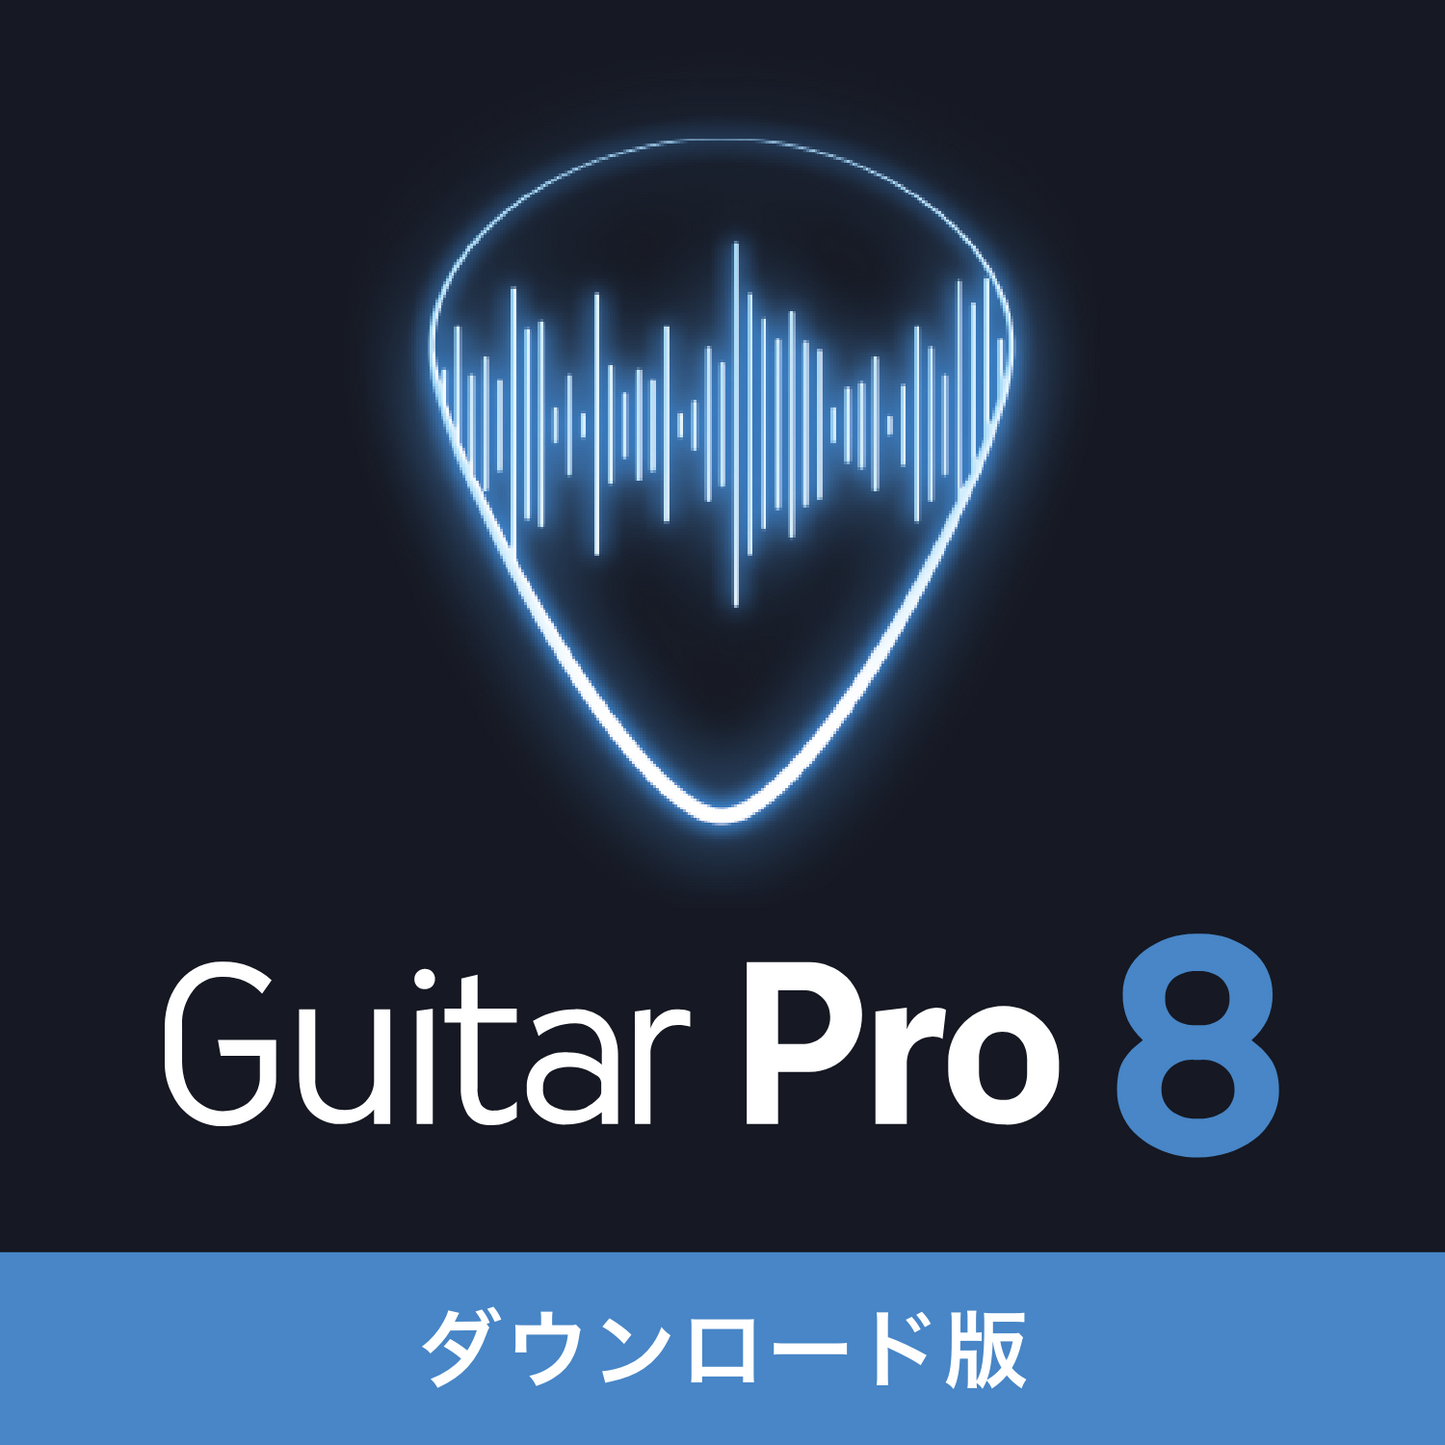 Guitar Pro 8【ダウンロード】